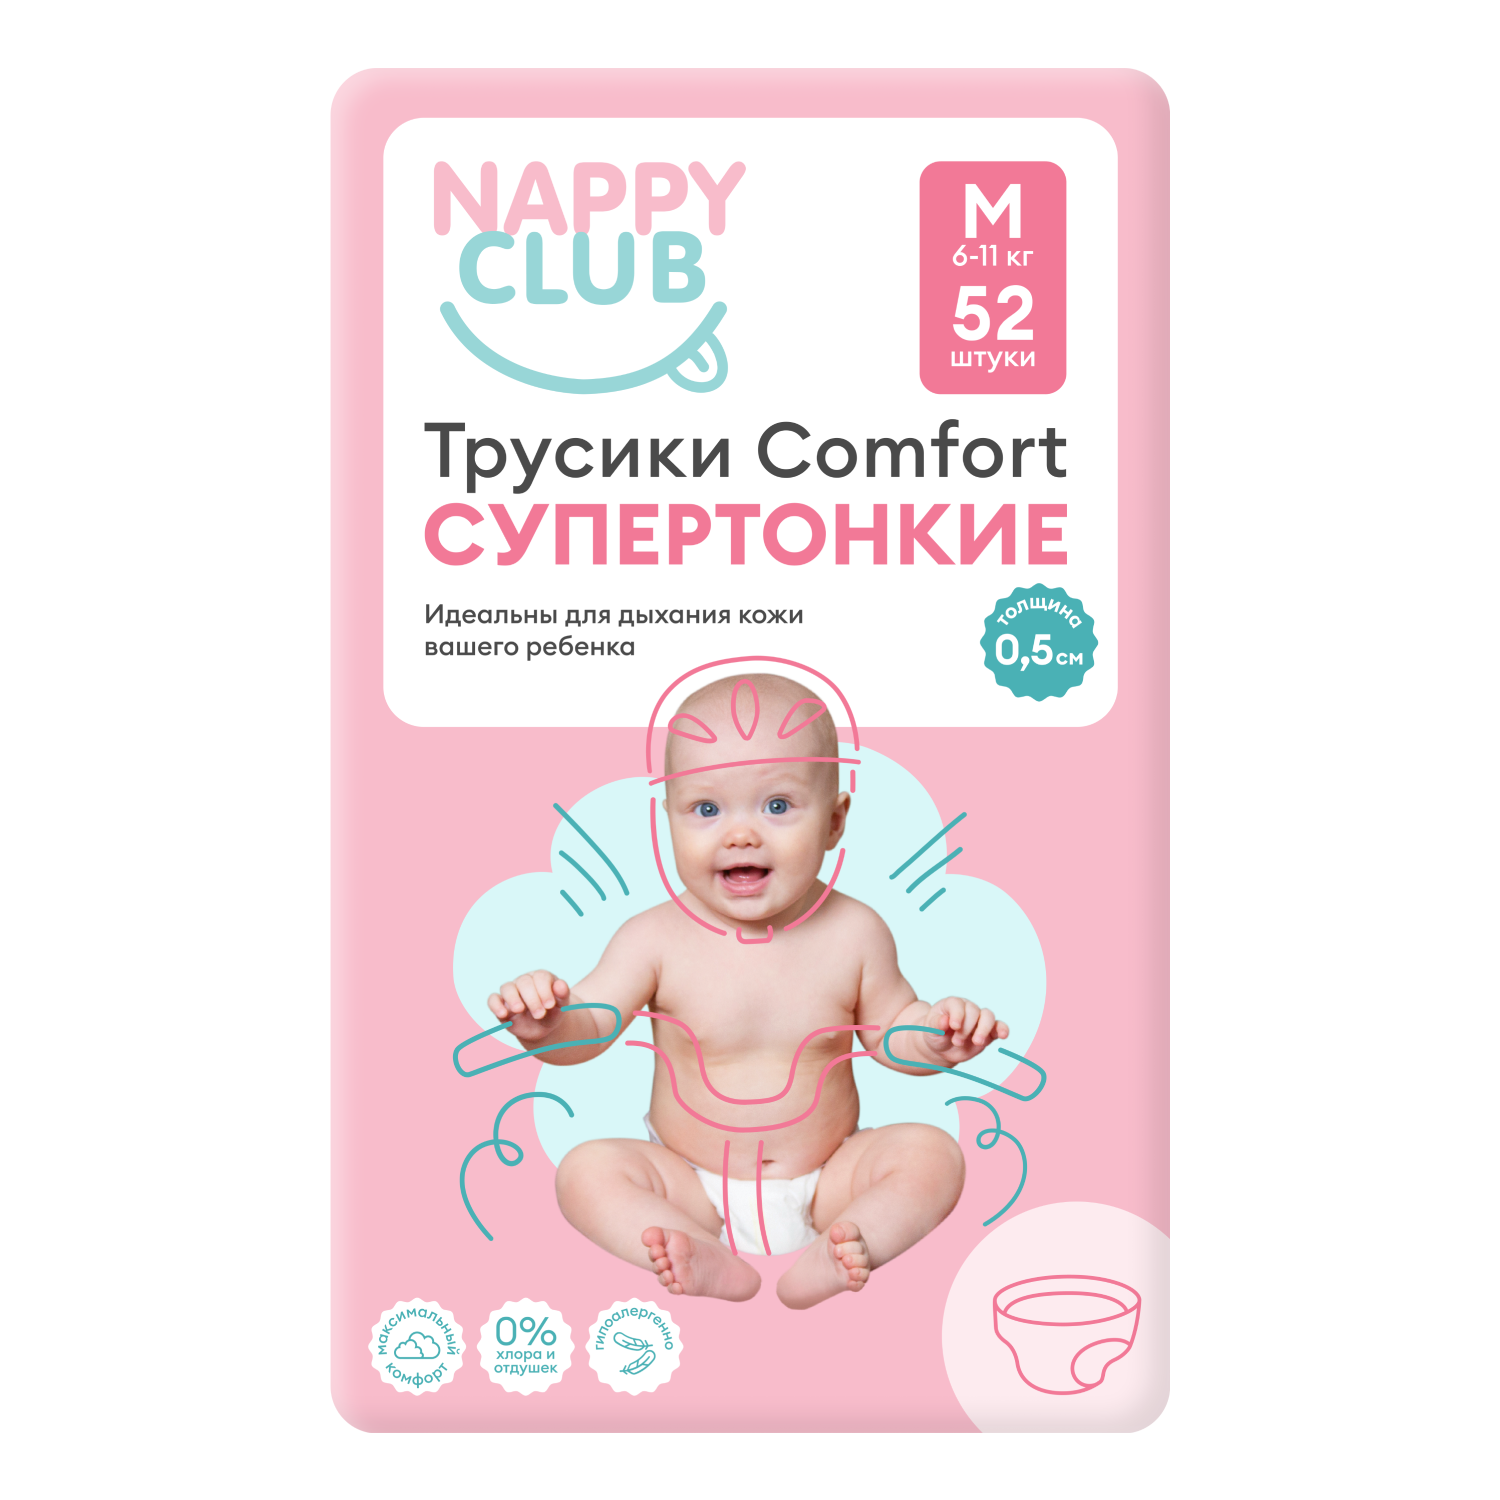 NappyClub трусики Comfort дневные супер-тонкие M (6-11 кг) 52 шт.